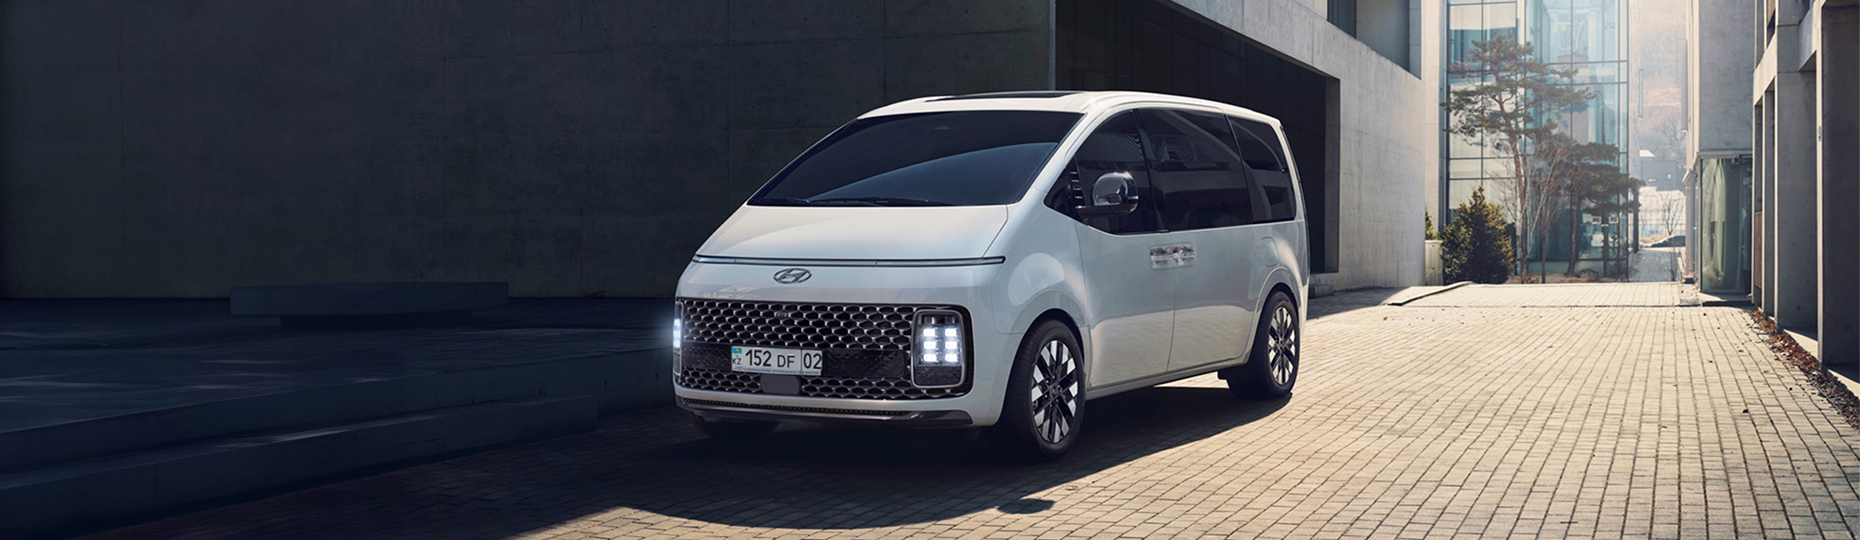 Производительность нового Hyundai Staria | Официальный дилер в Караганде